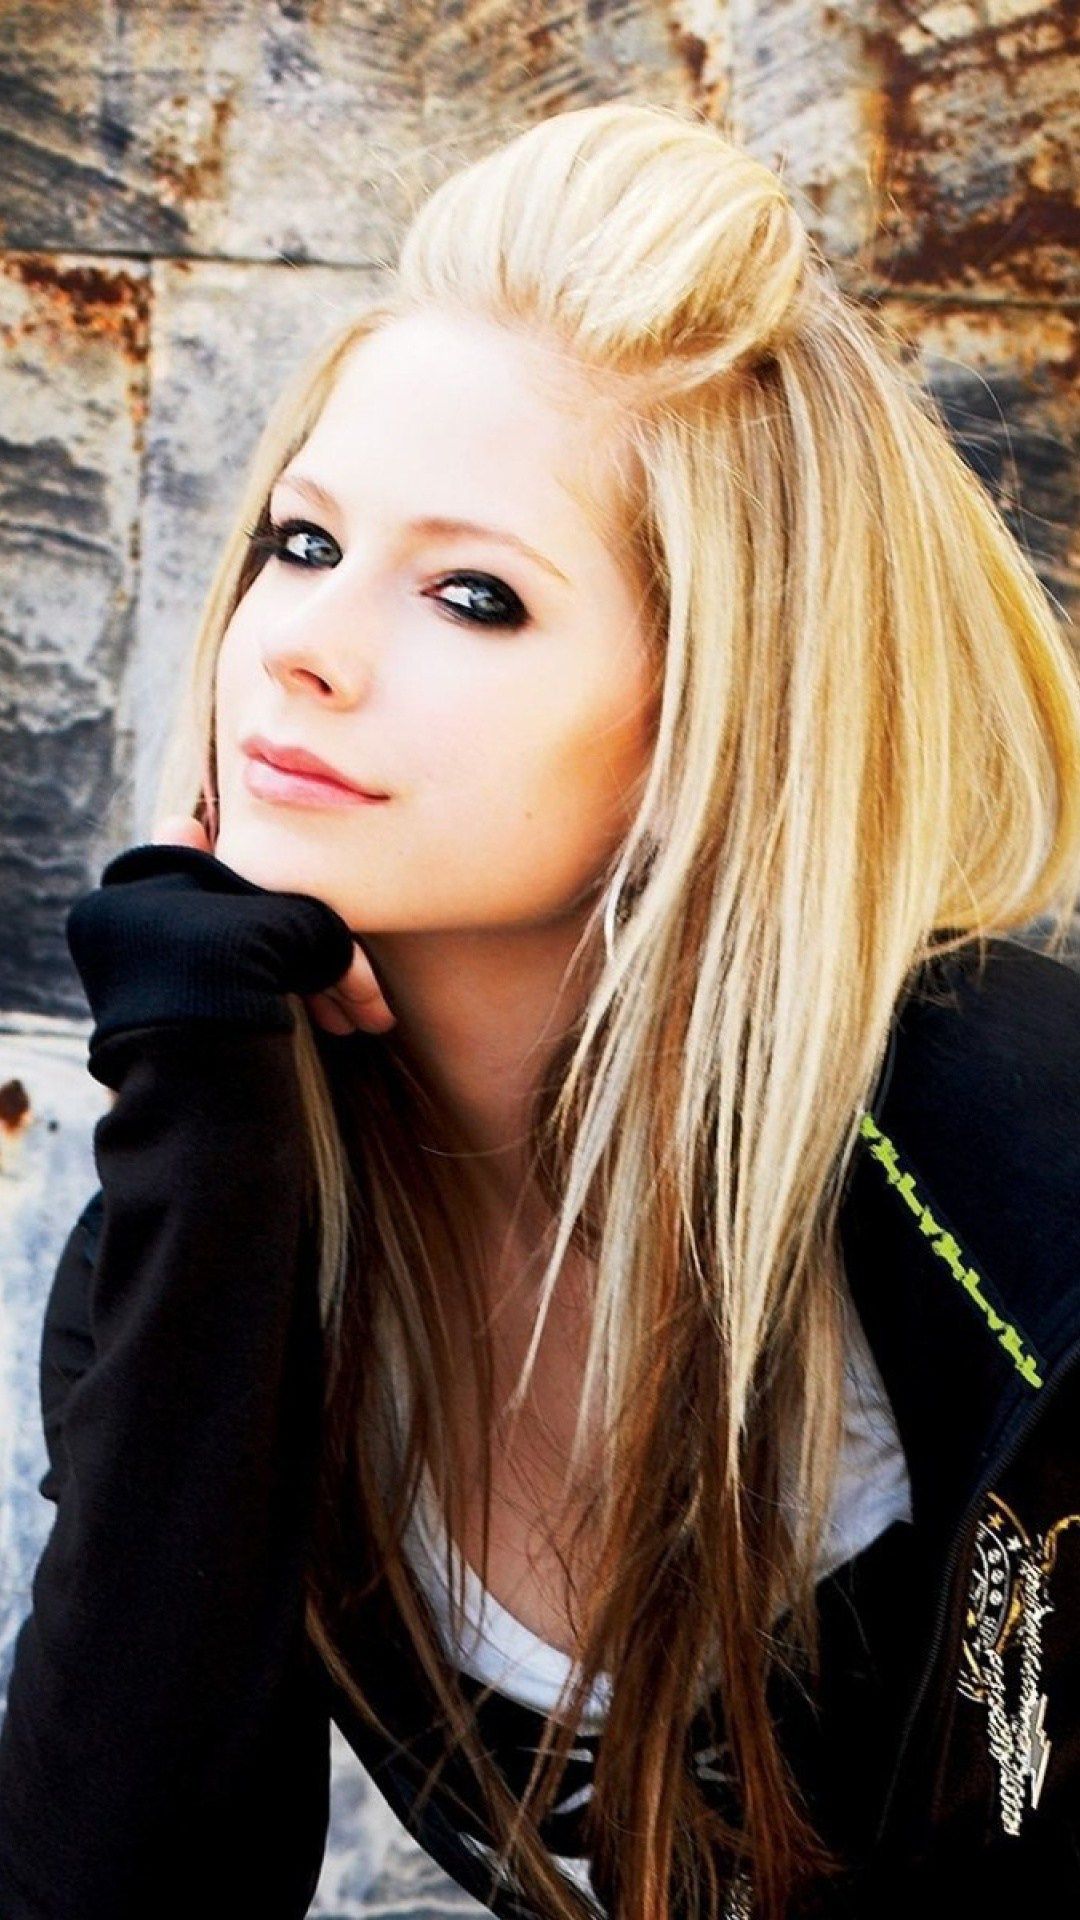 Avril Lavigne iPhone Wallpaper Lavigne Abbey Dawn 2008